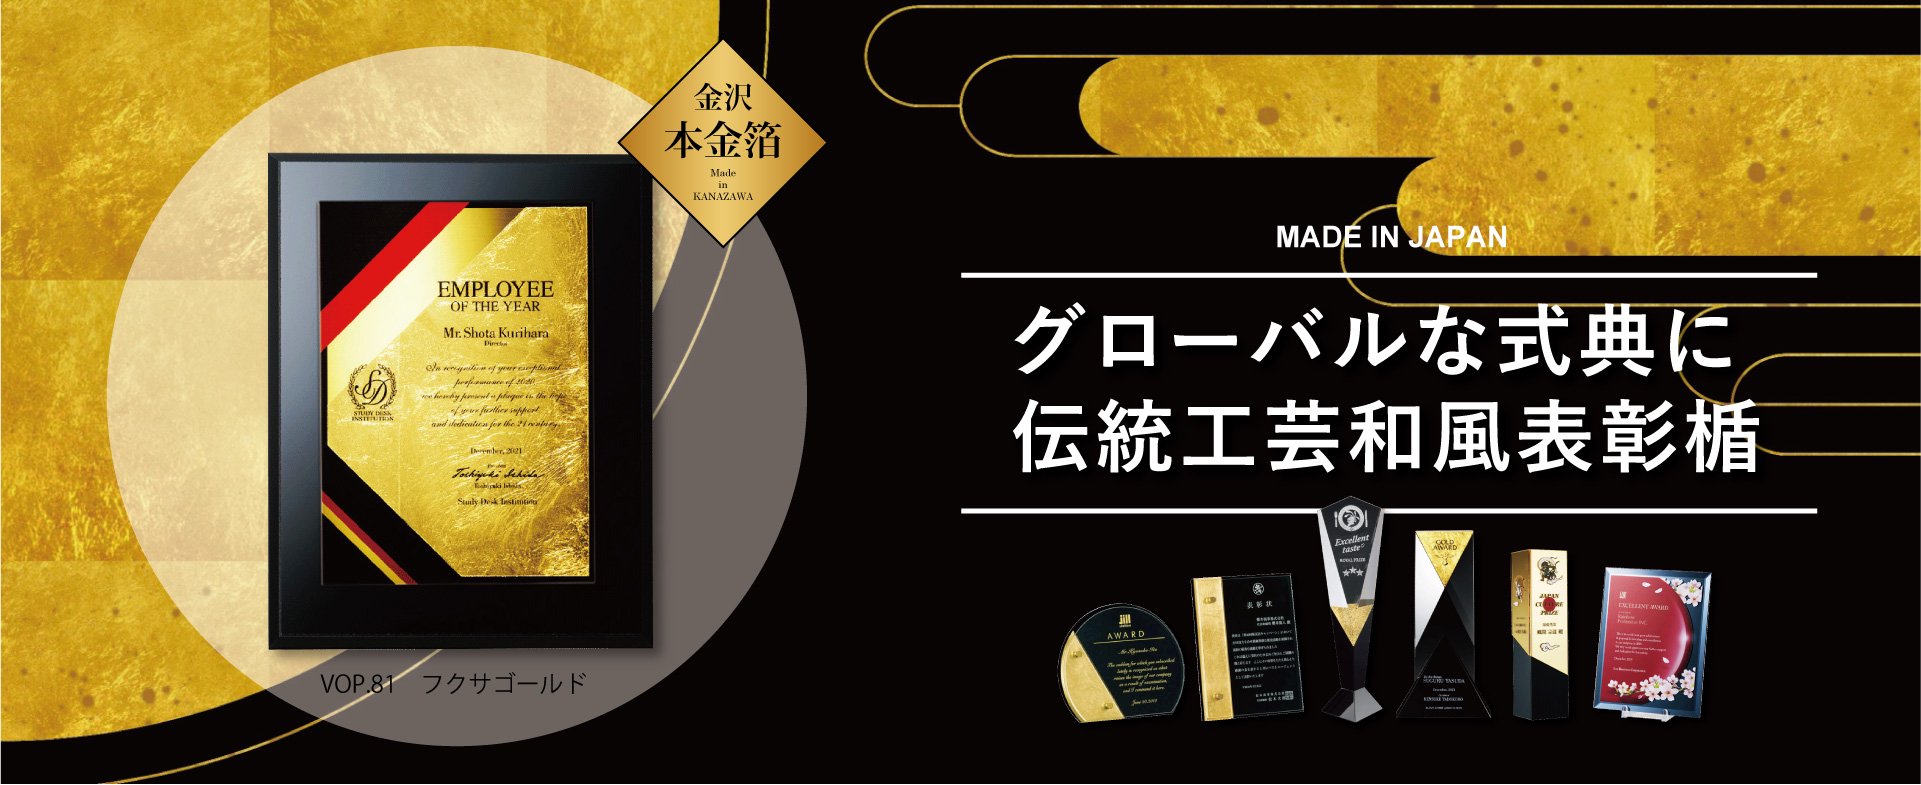 トロフィー 表彰楯 メダル専門店 東京都 ジャパンプライズ株式会社